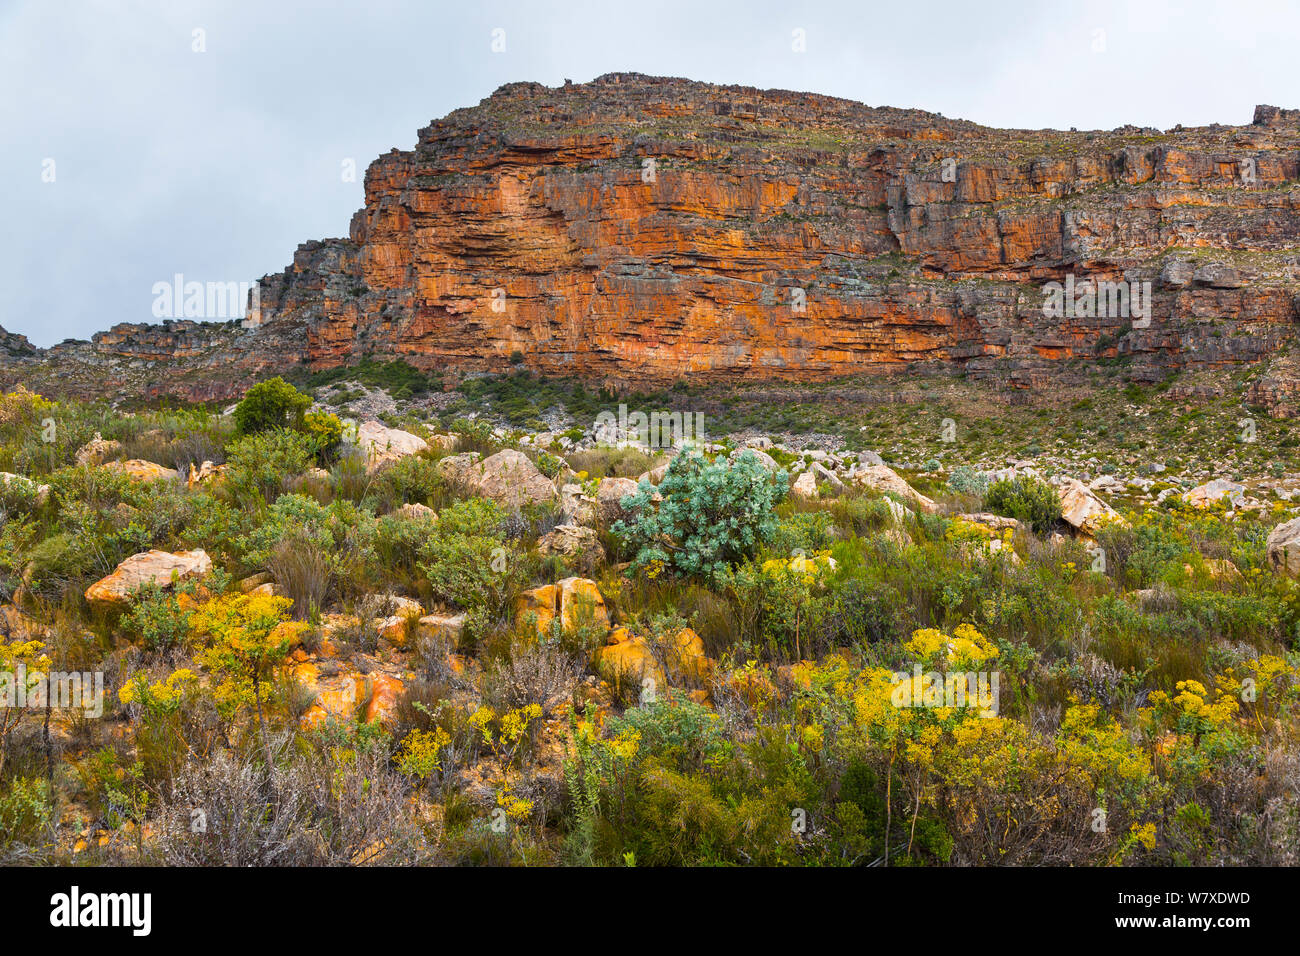 Les falaises et la végétation succulente, Pakhuis Pass, fleurs sauvages, Clanwilliam, montagnes Cederberg, province de Western Cape, Afrique du Sud, septembre 2012. Banque D'Images